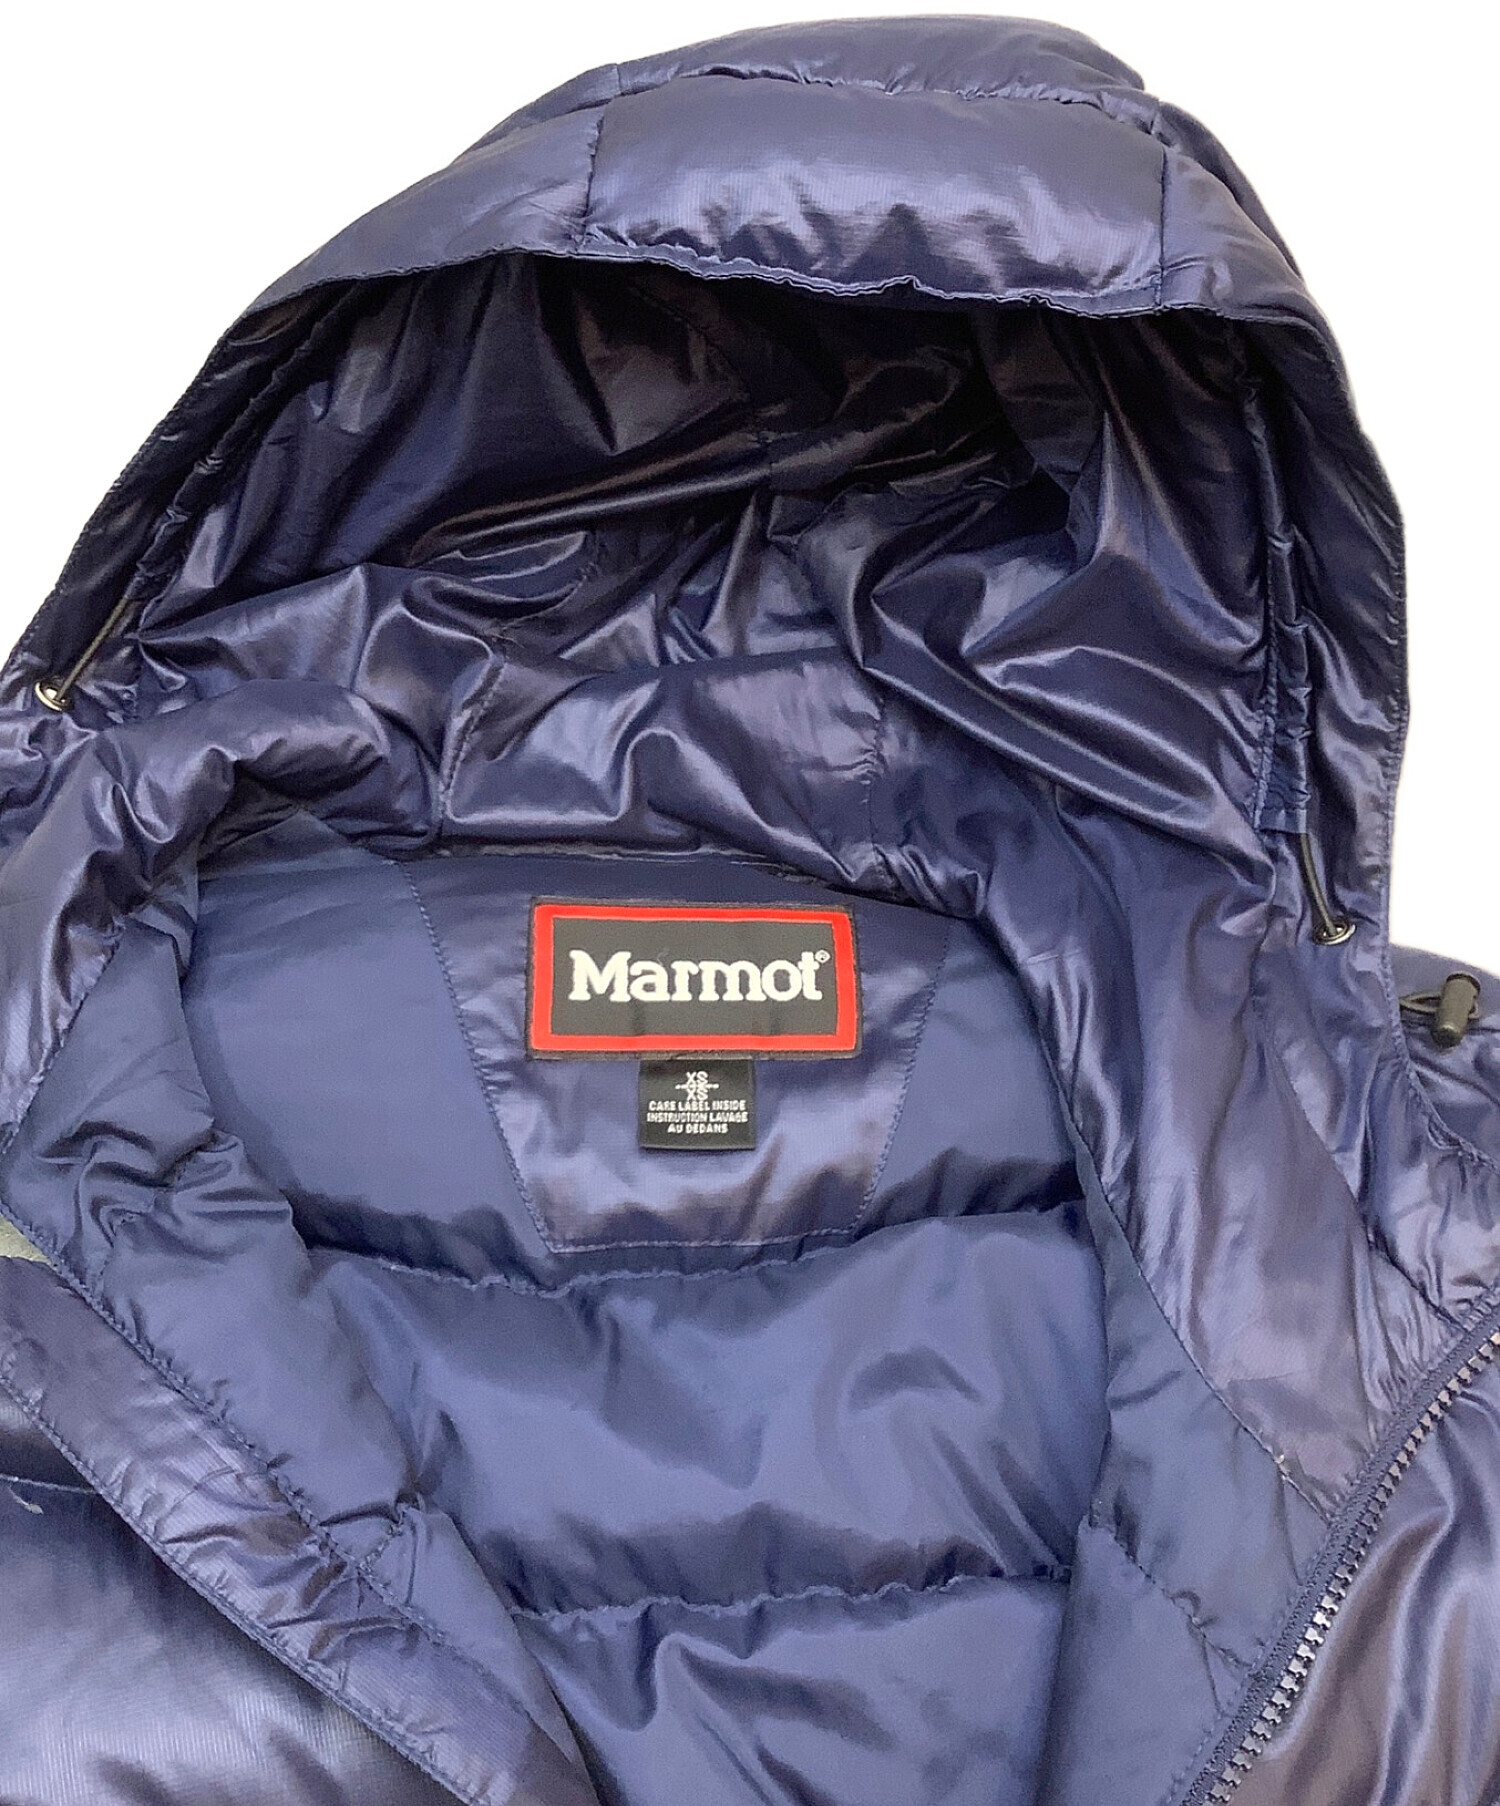 MARMOT (マーモット) ダウンジャケット ネイビー サイズ:XS